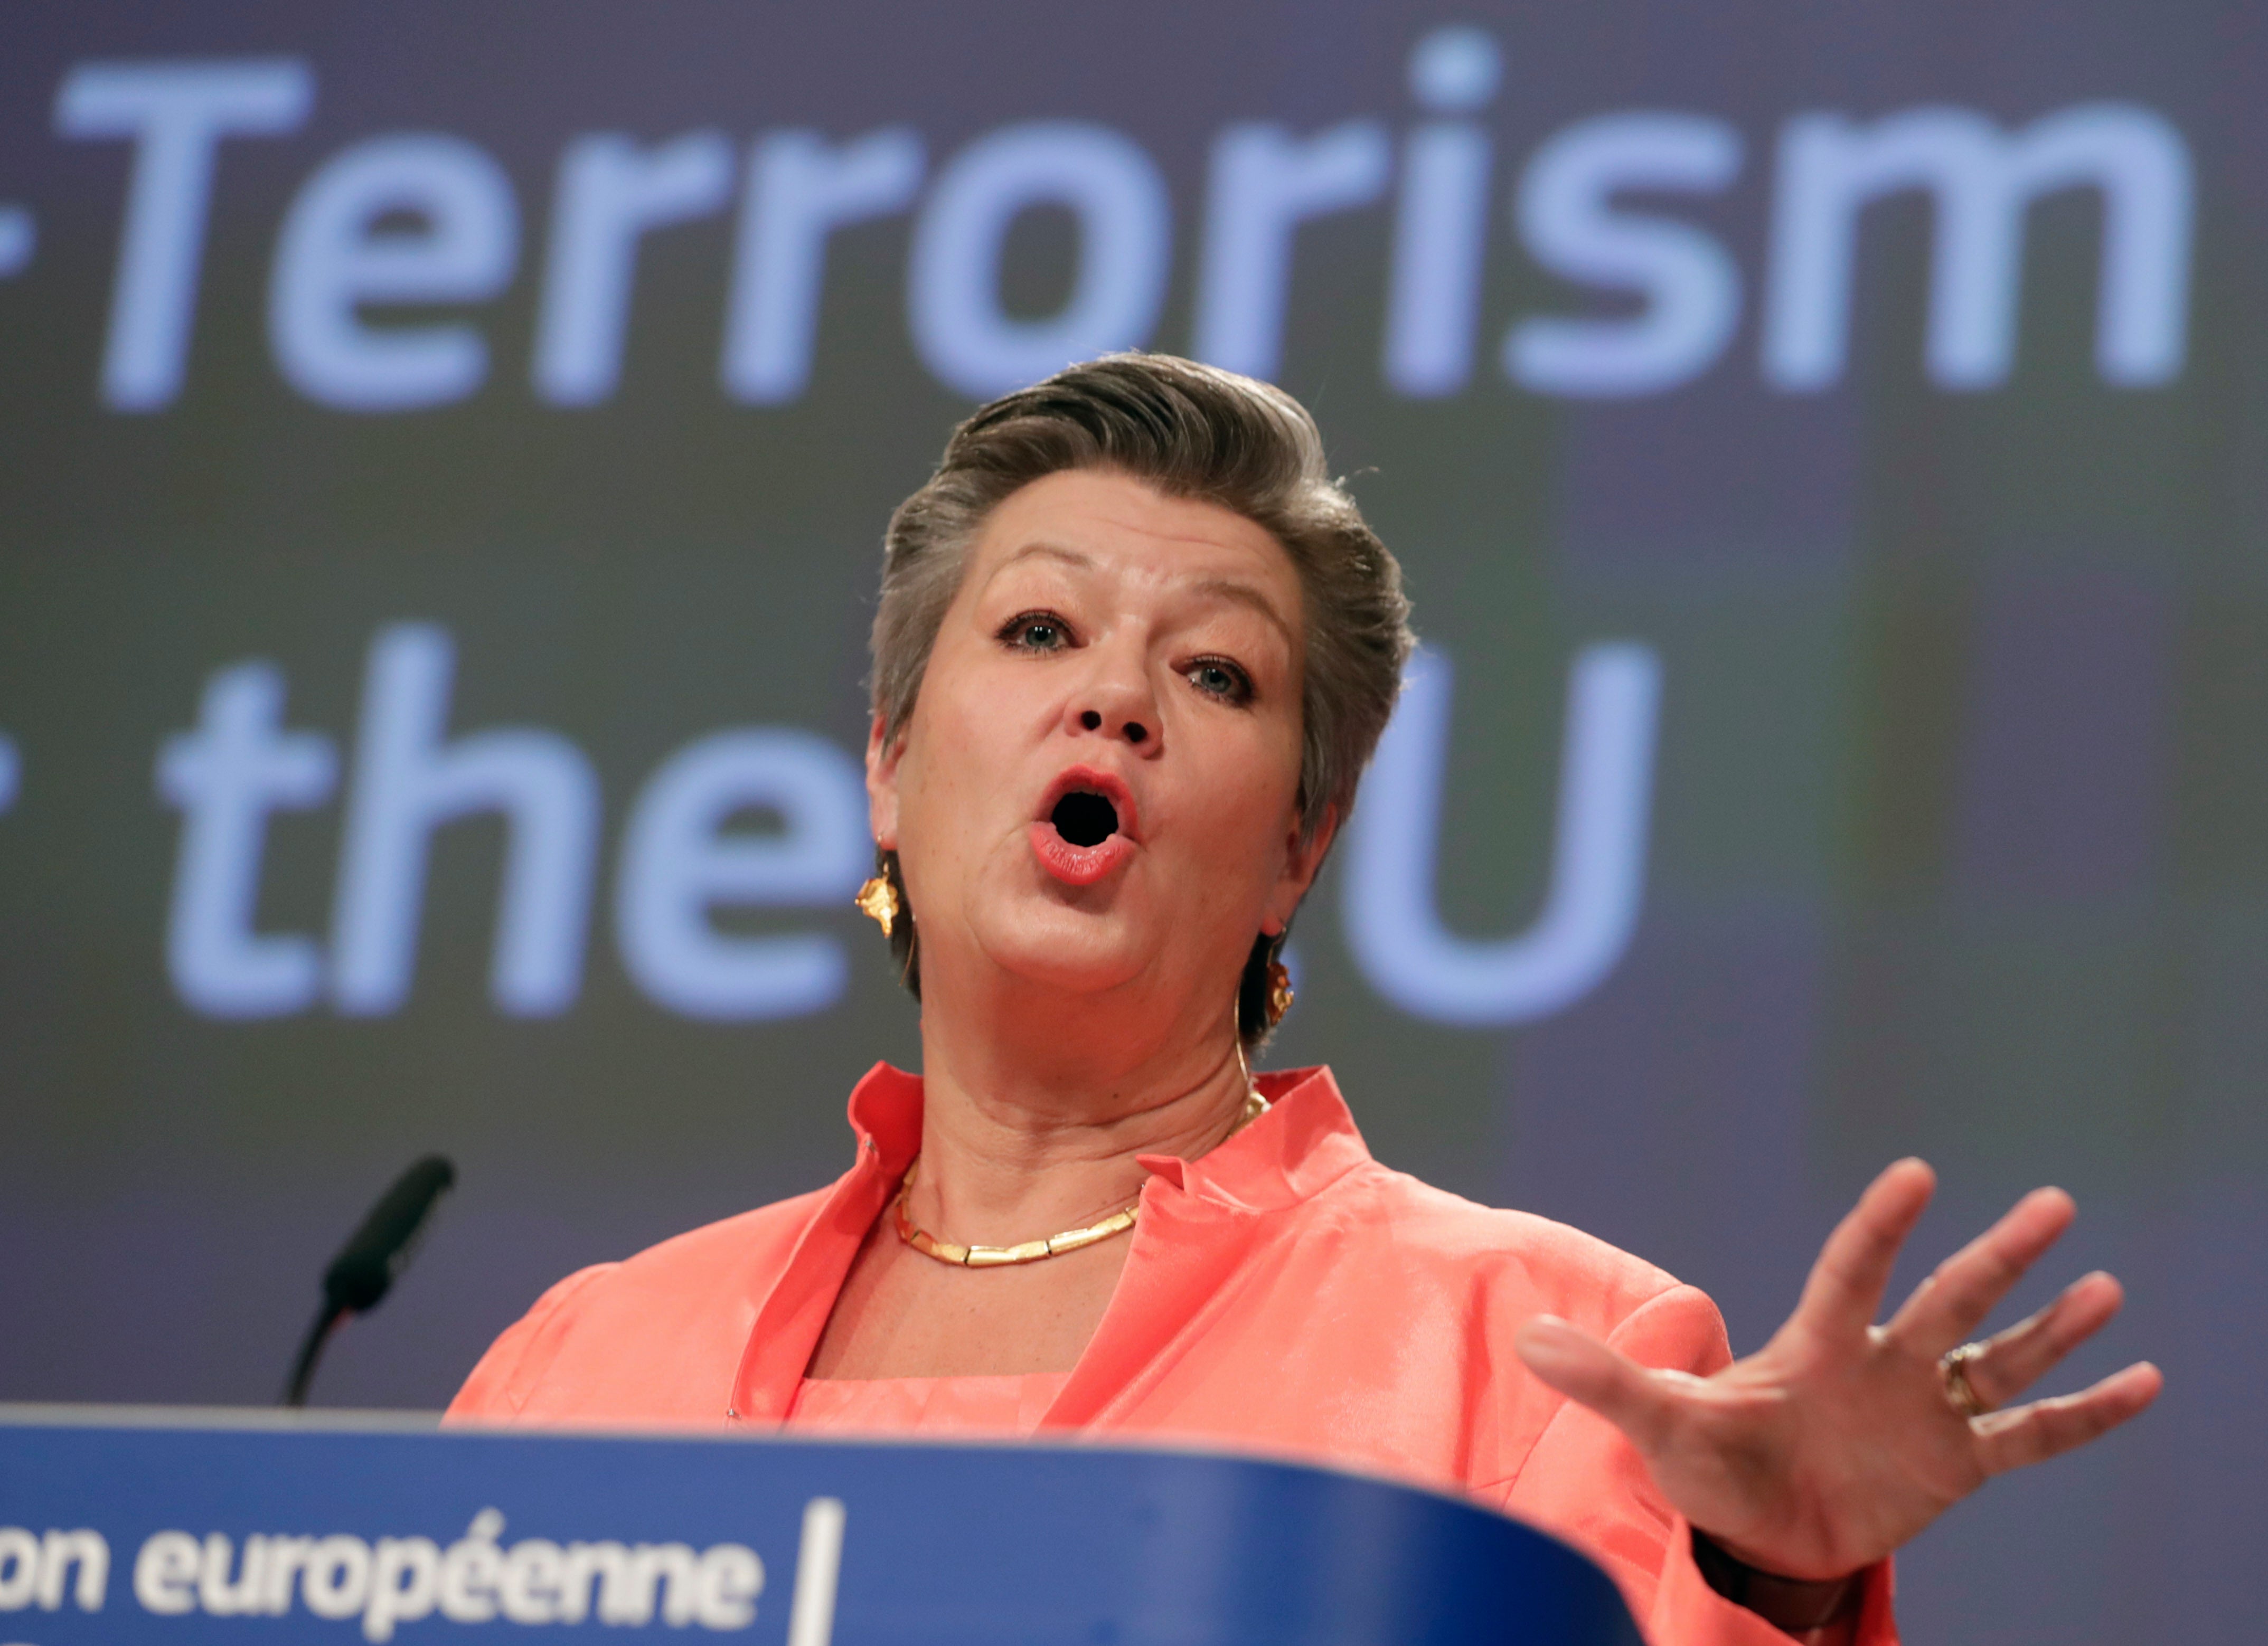 Belgium EU Terrorism